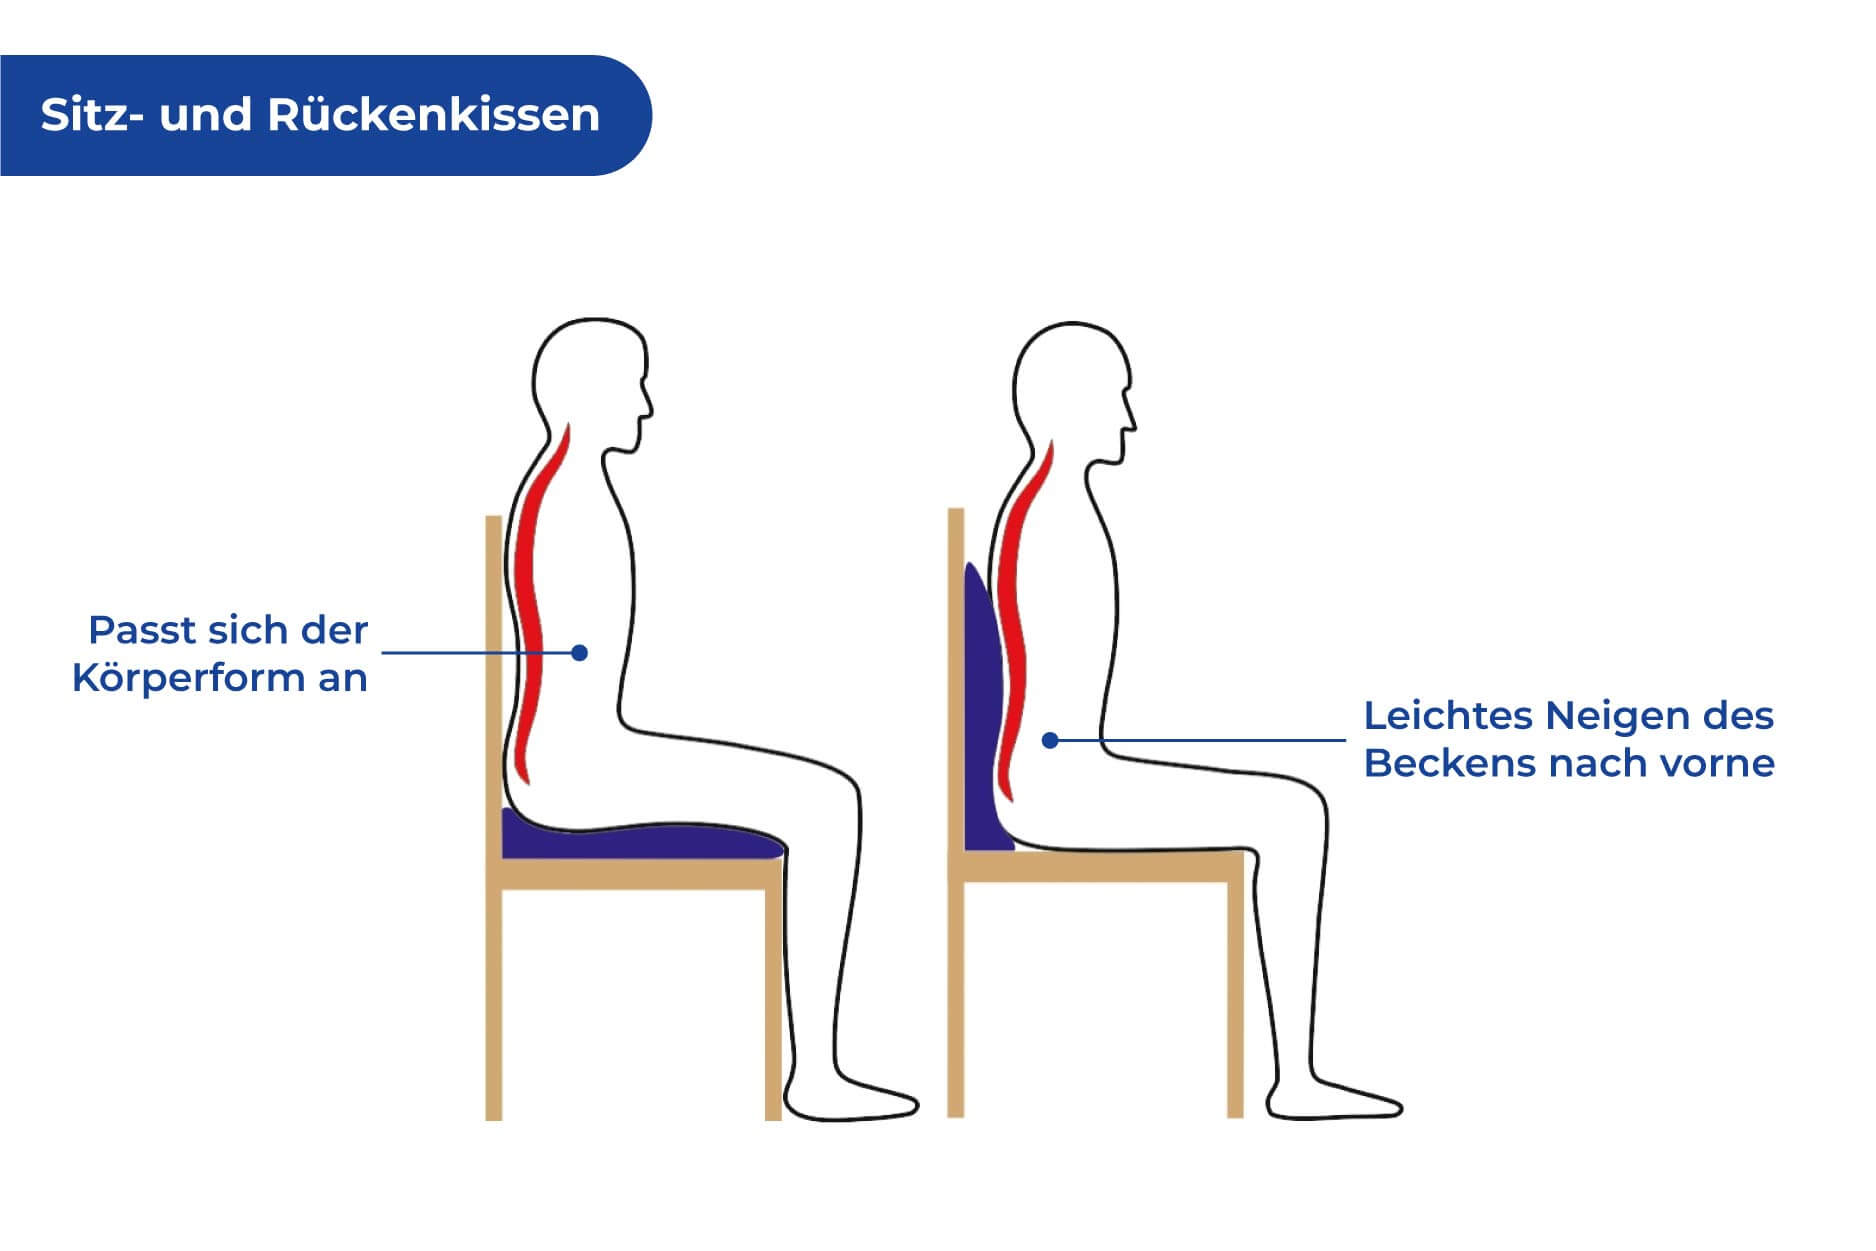 Sitz- und Rückenkissen